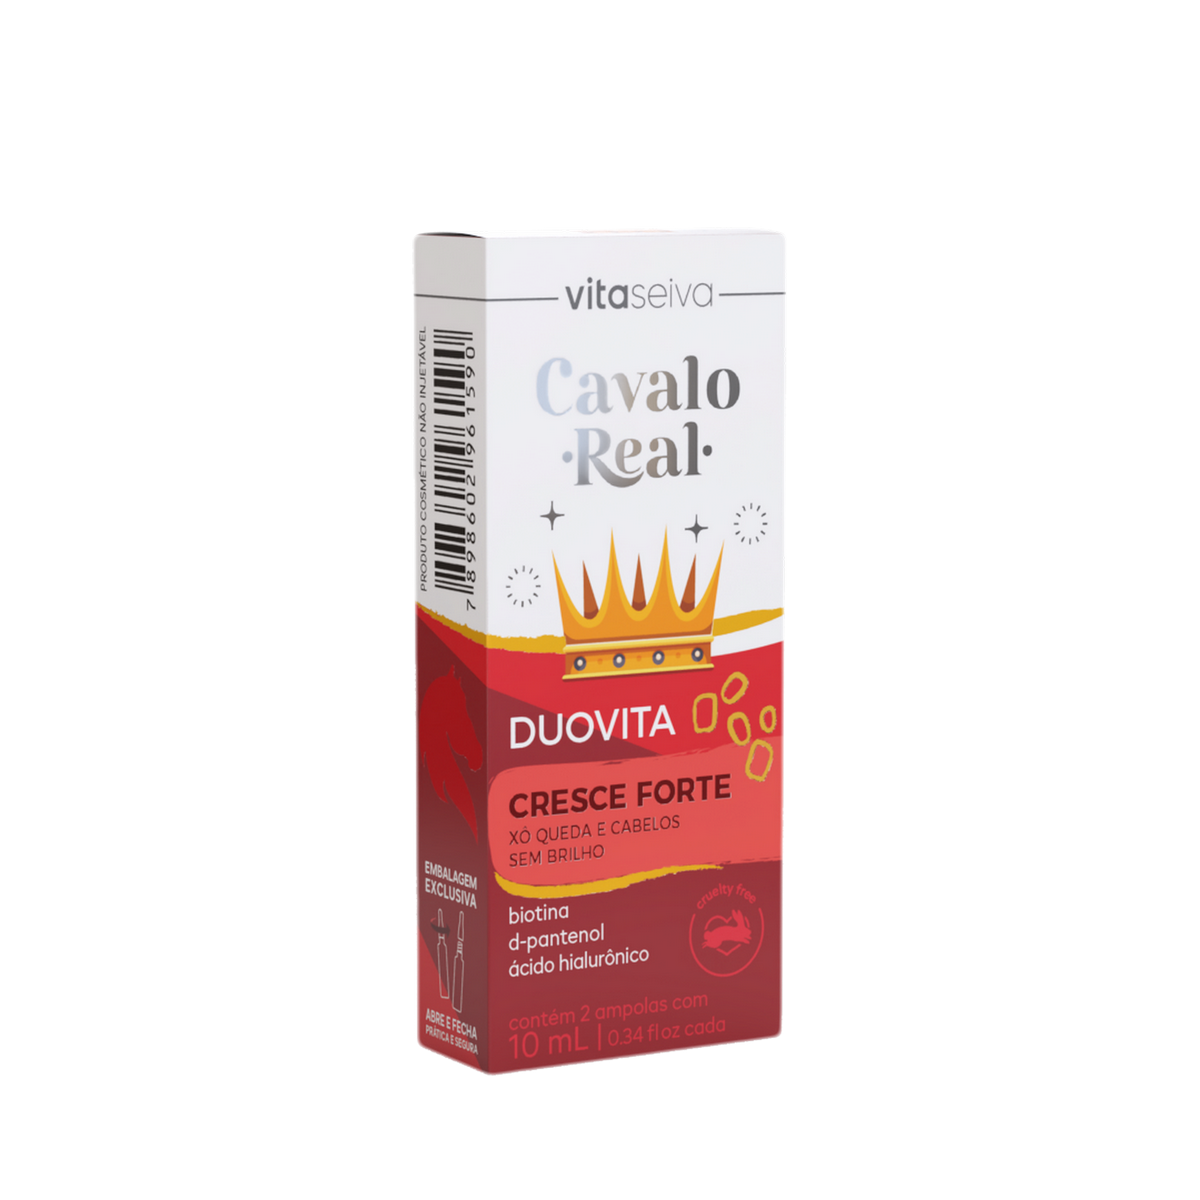 Vitamina Duovita Vita Seiva Cavalo Real 20ml